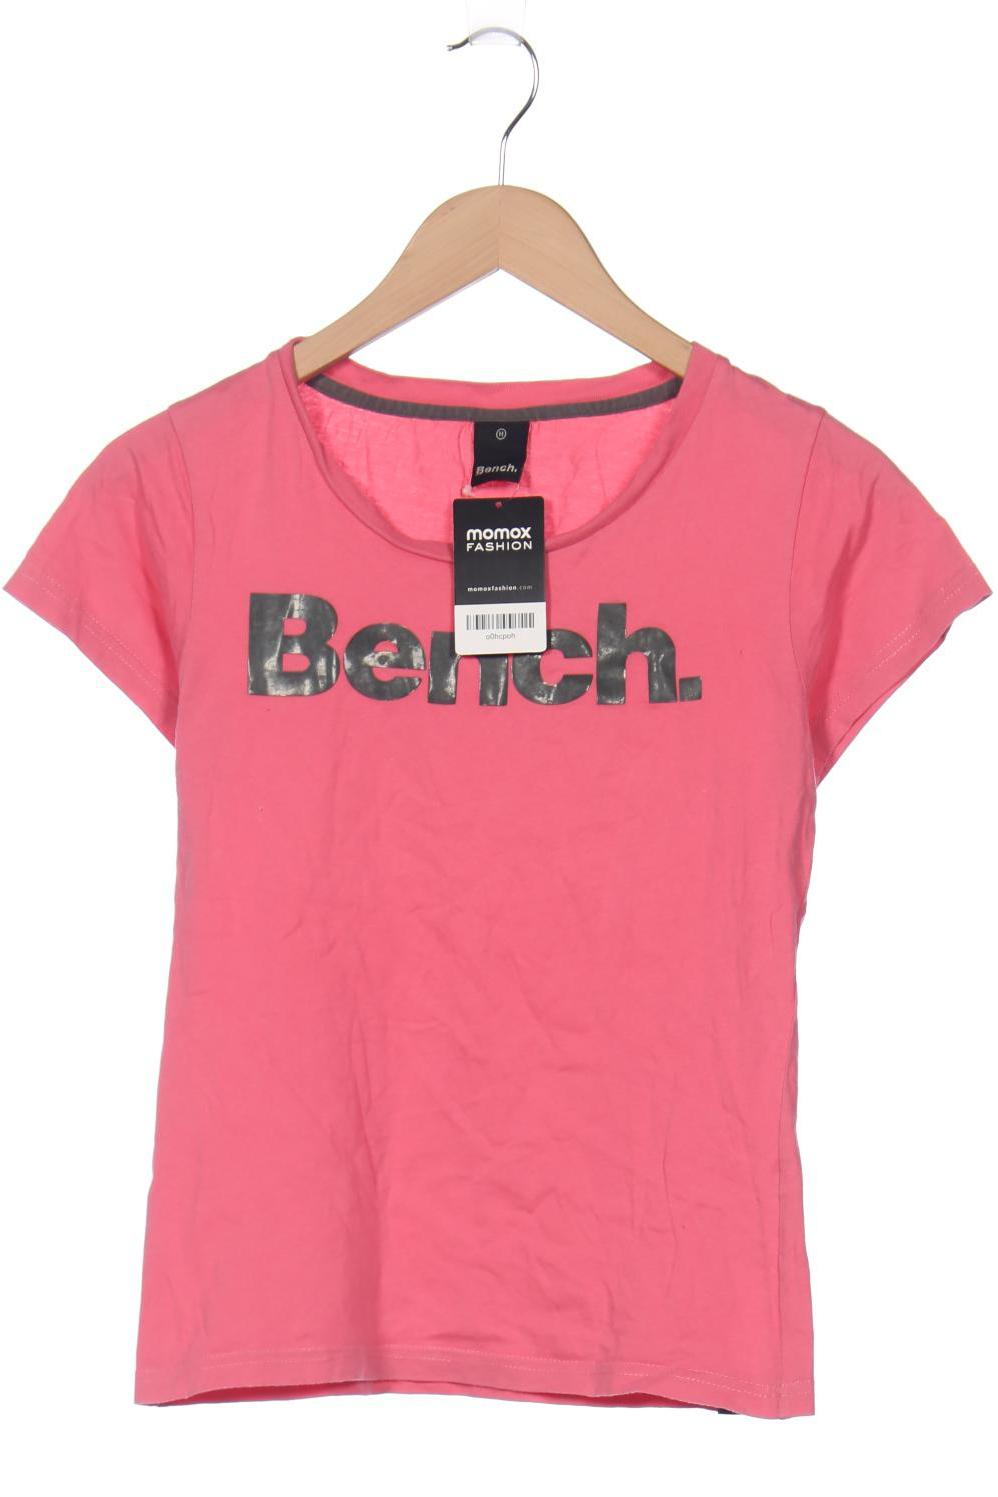 Bench. Damen T-Shirt, pink von Bench.